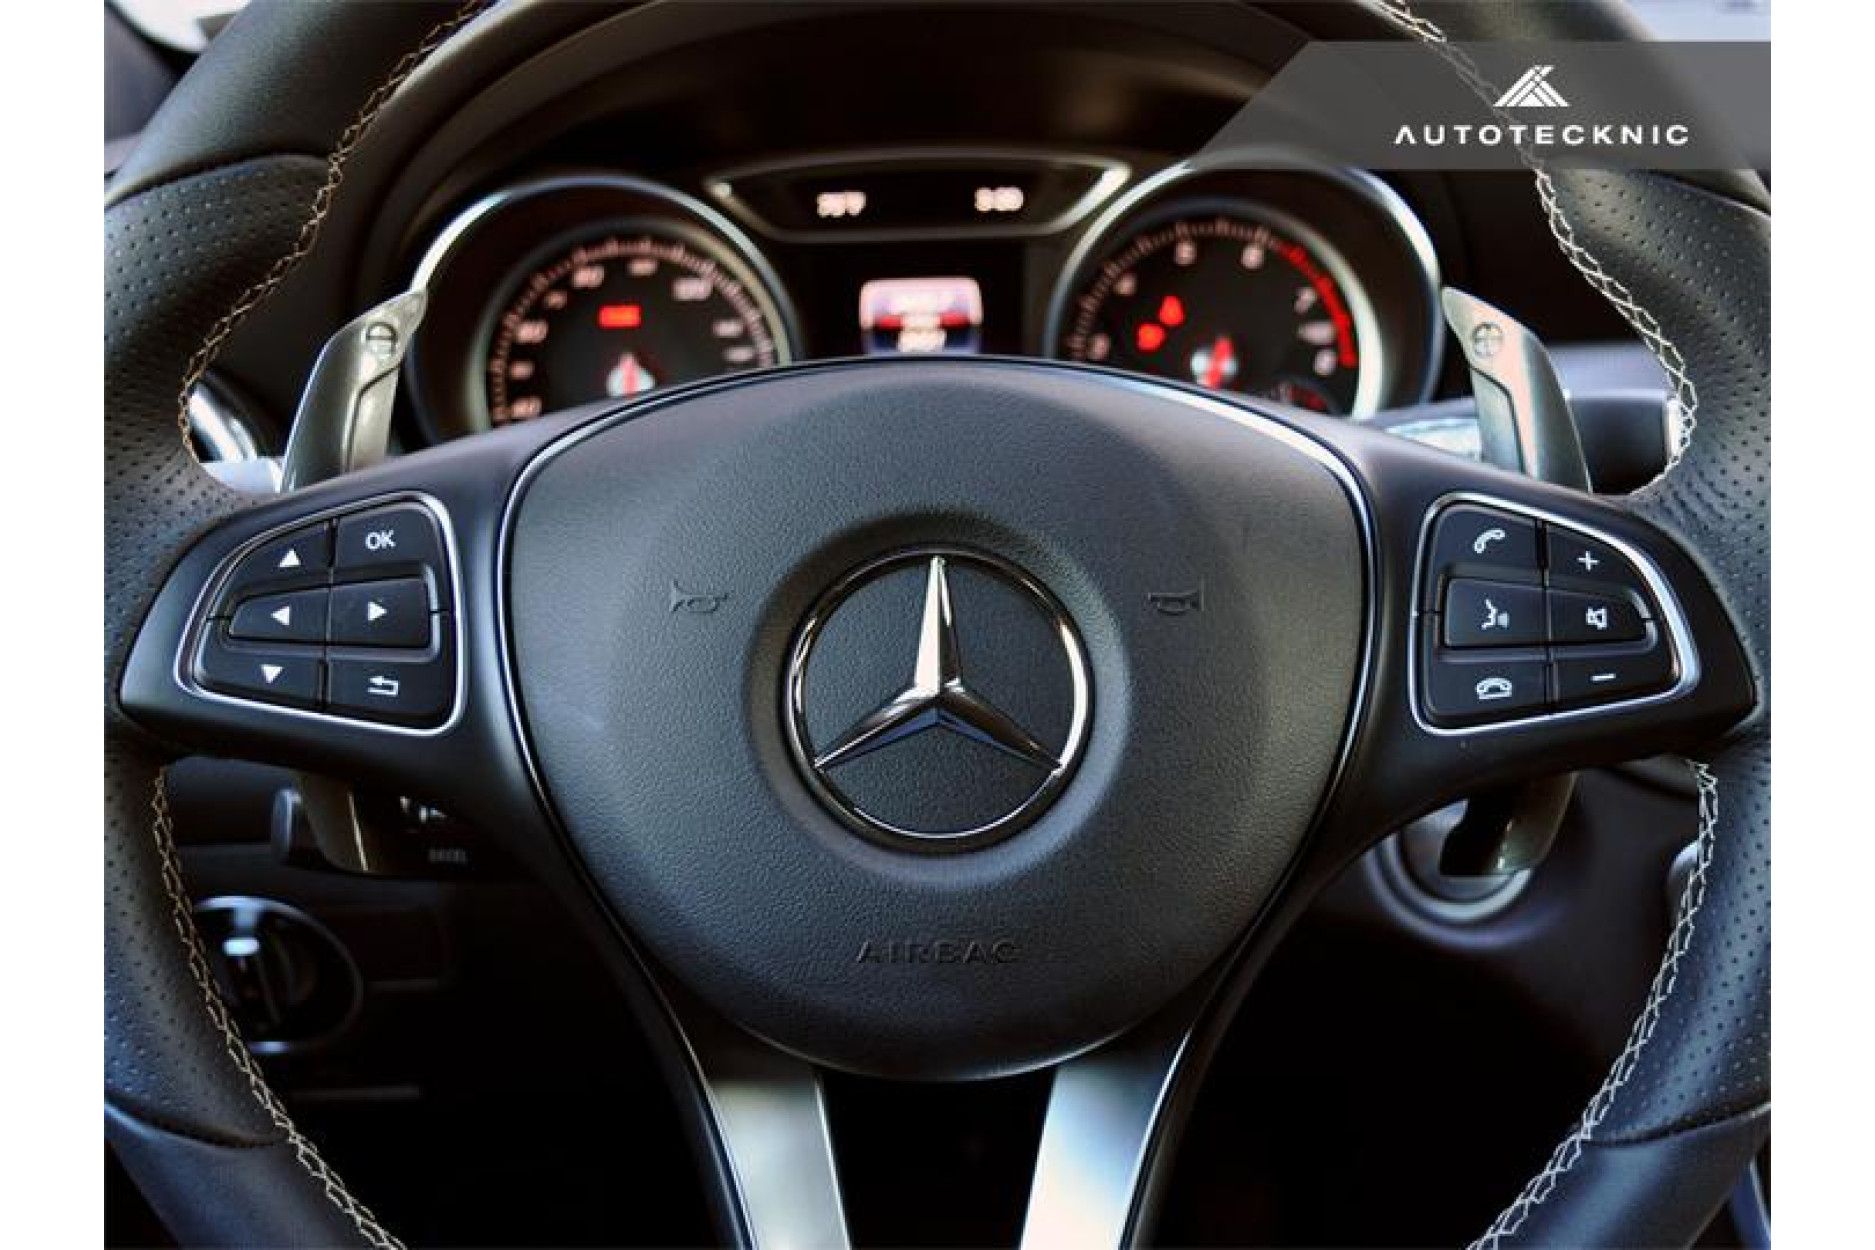 Autotecknic Aluminium Schaltwippen für Mercedes Benz kein AMG Silver Alloy  - online kaufen bei CFD